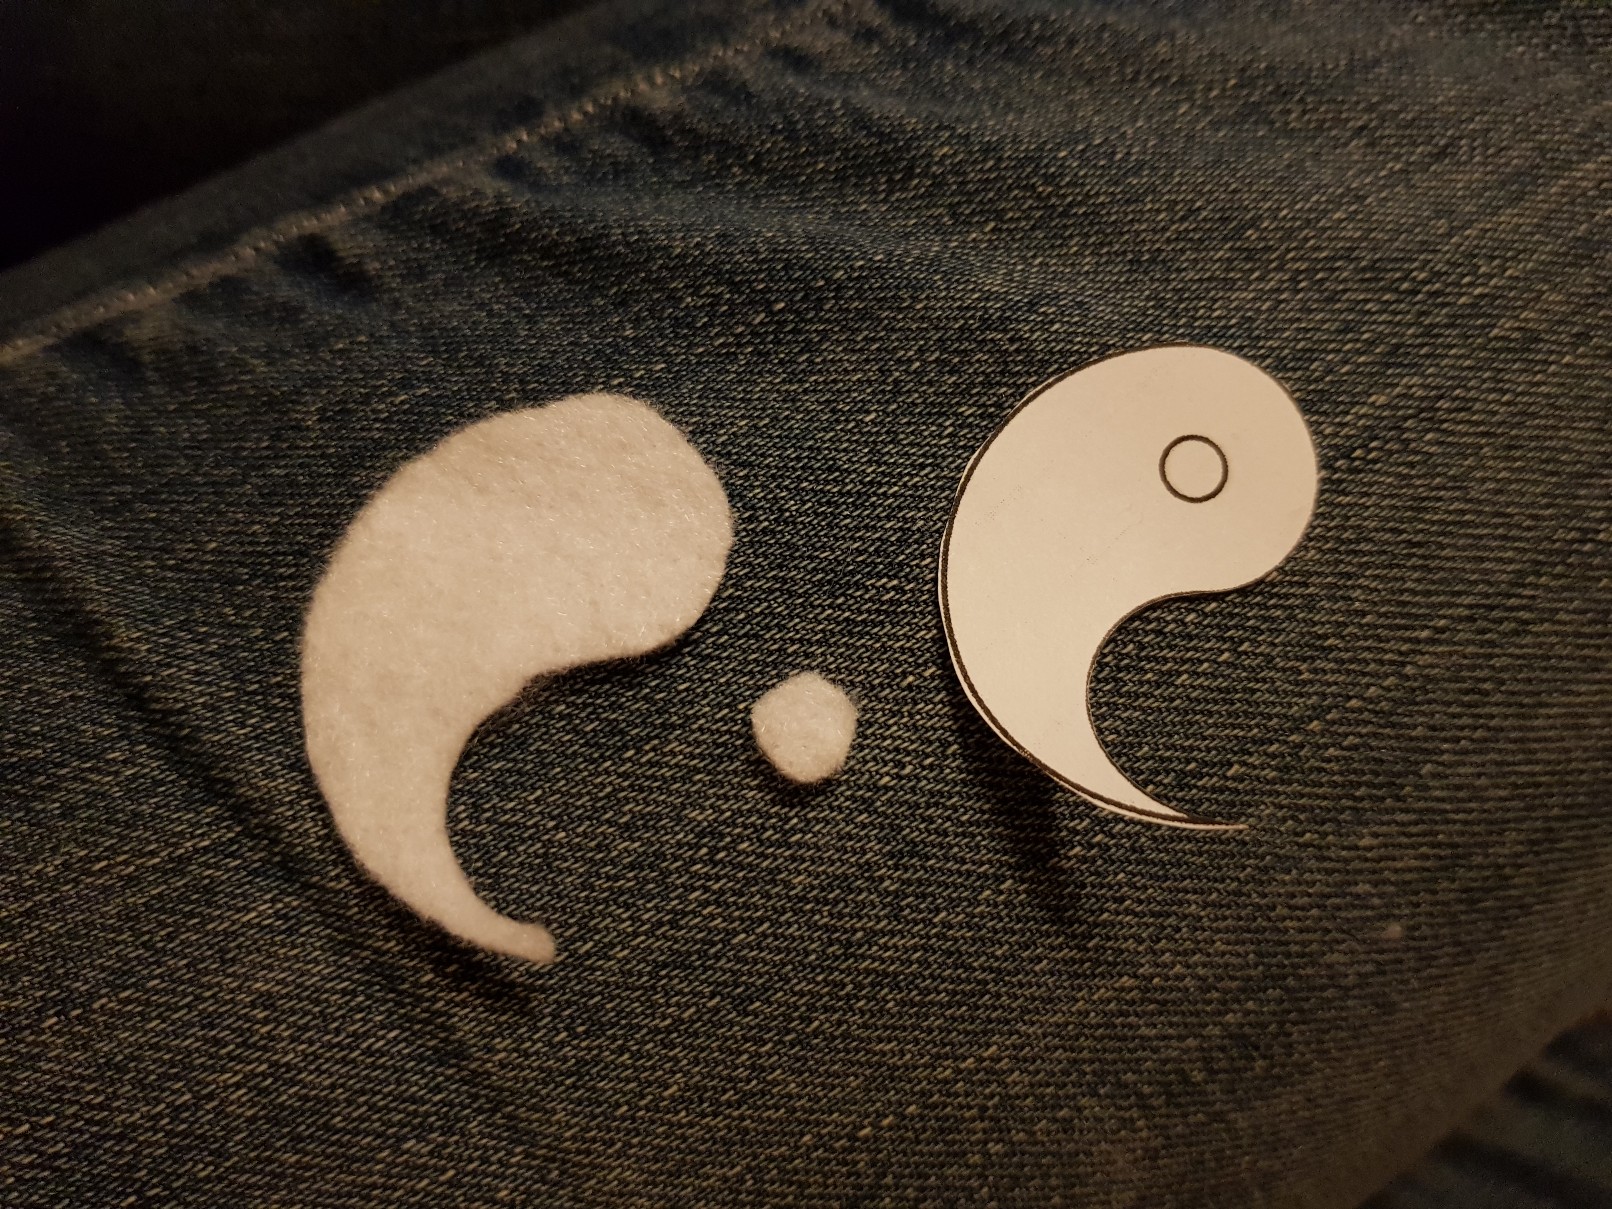 yin yang felt keychain project cut